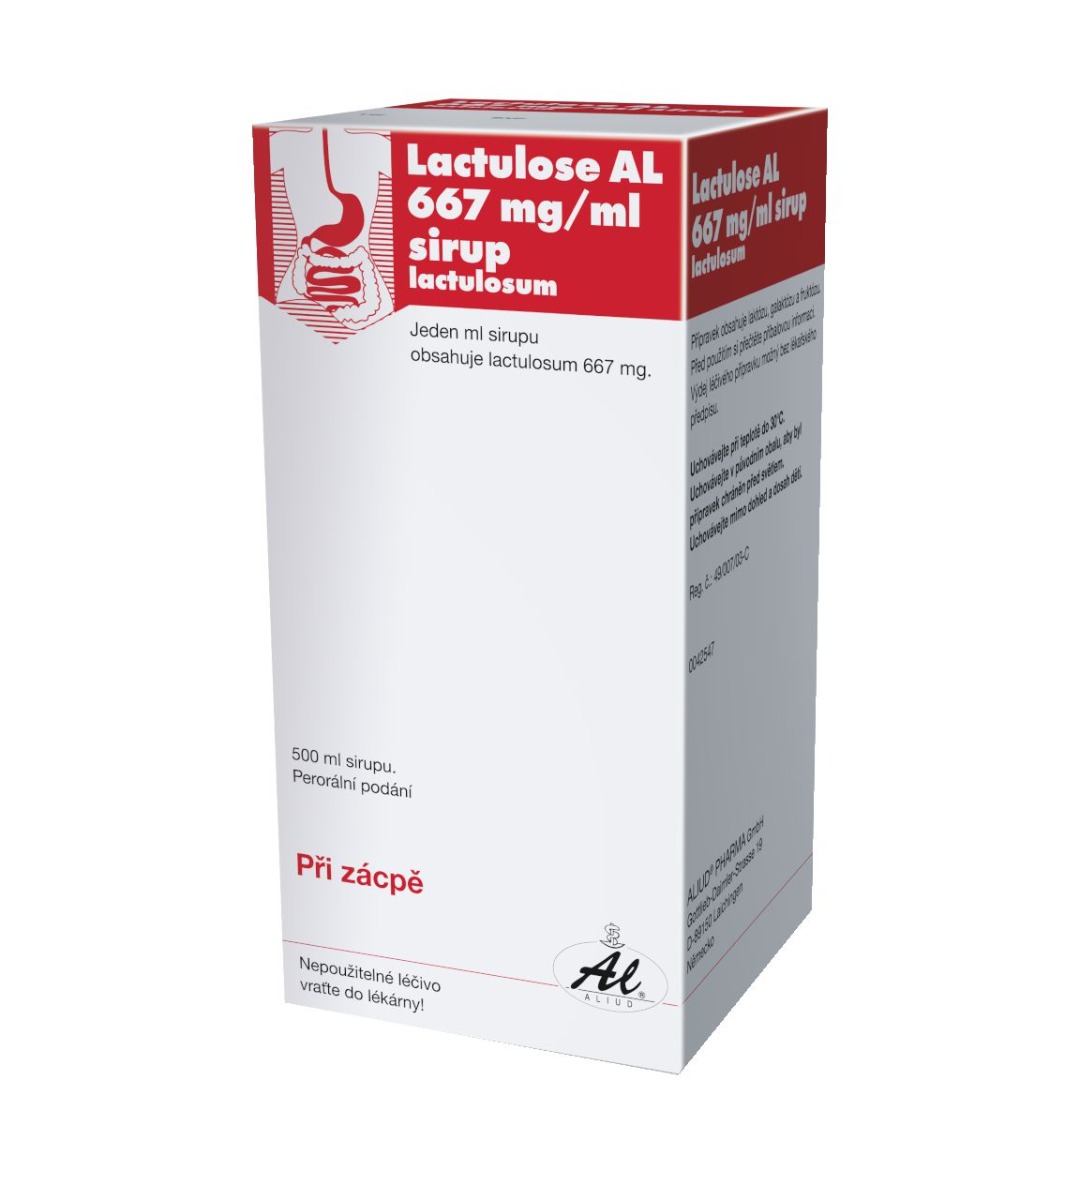 Lactulose AL sirup 500 ml Lactulose AL